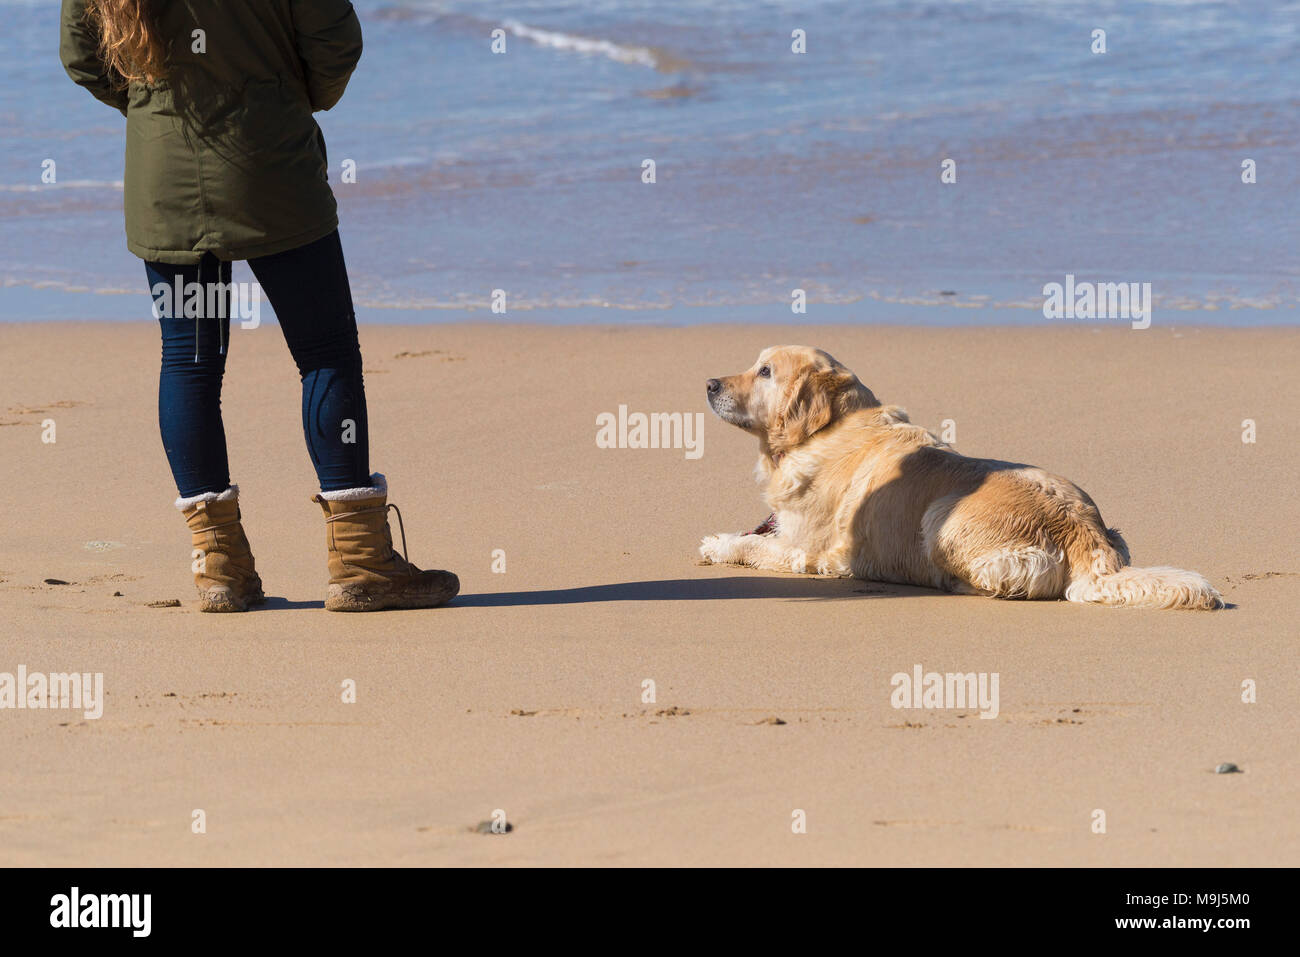 Un chien sur une plage à la recherche de son propriétaire. Banque D'Images